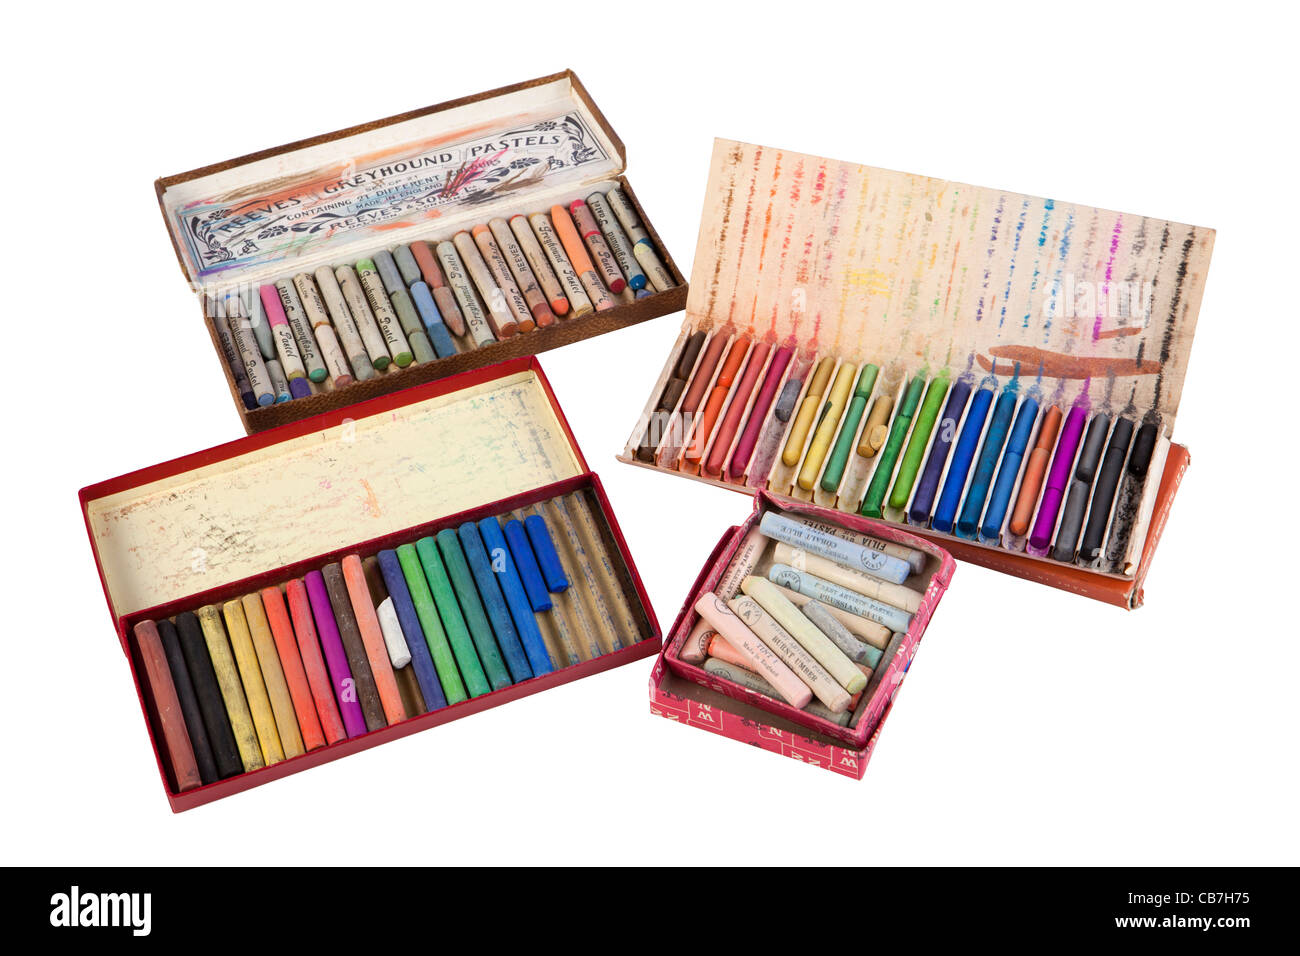 Arte, artistas utilizan cajas coloridas de tiza pastel Foto de stock